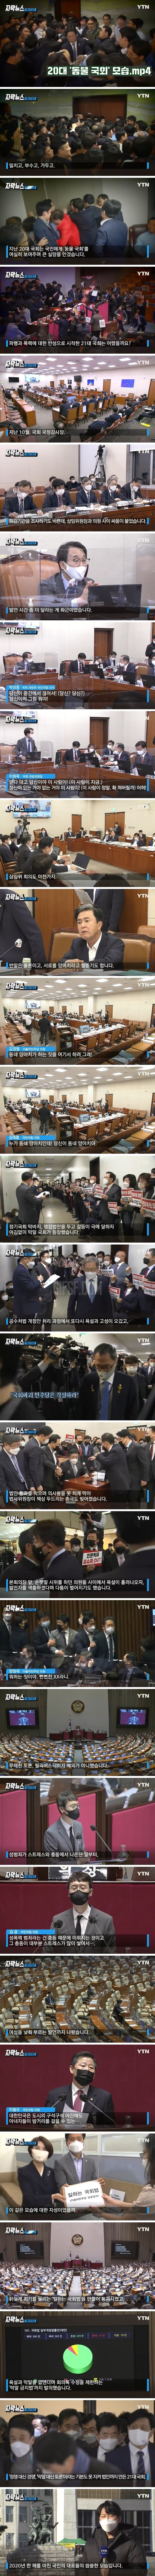 욕설·몸싸움은 필수인 대한민국 ',국민 대표들',.jpg